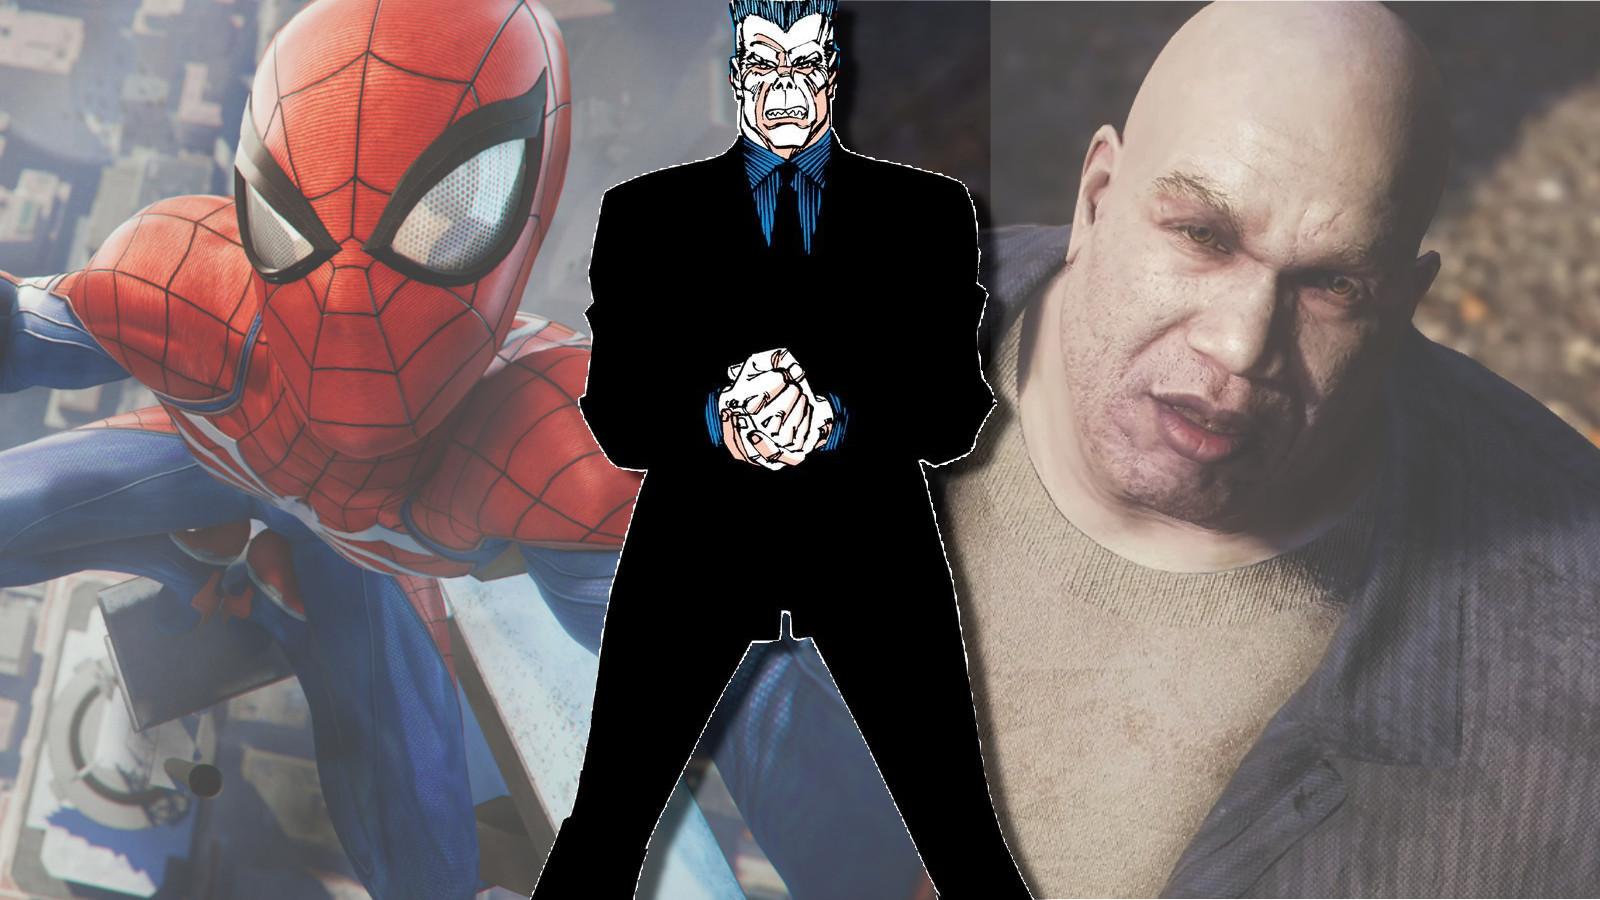 Tombstone kimdir? Marvel's Spider-Man 2'nin kötü adamı açıklandı